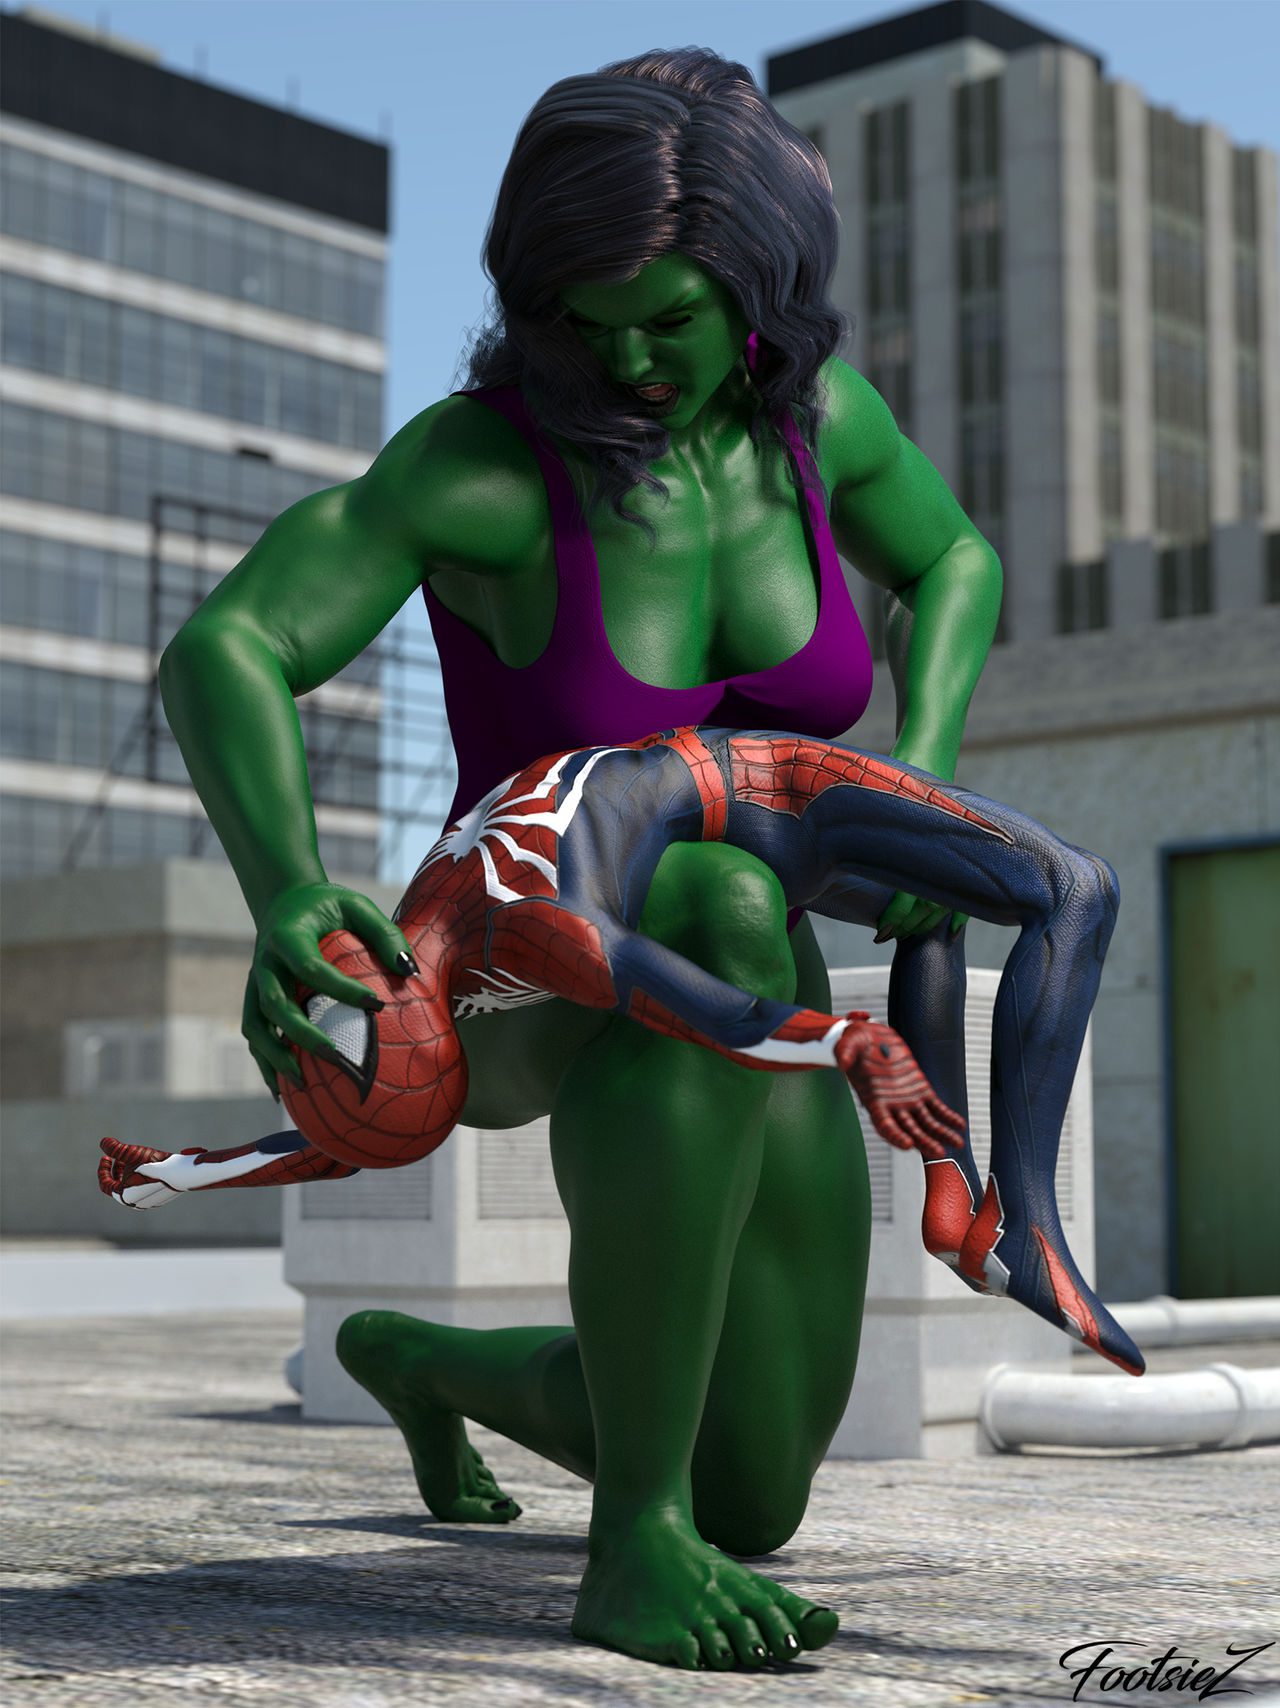 Rule 34 She Hulk.